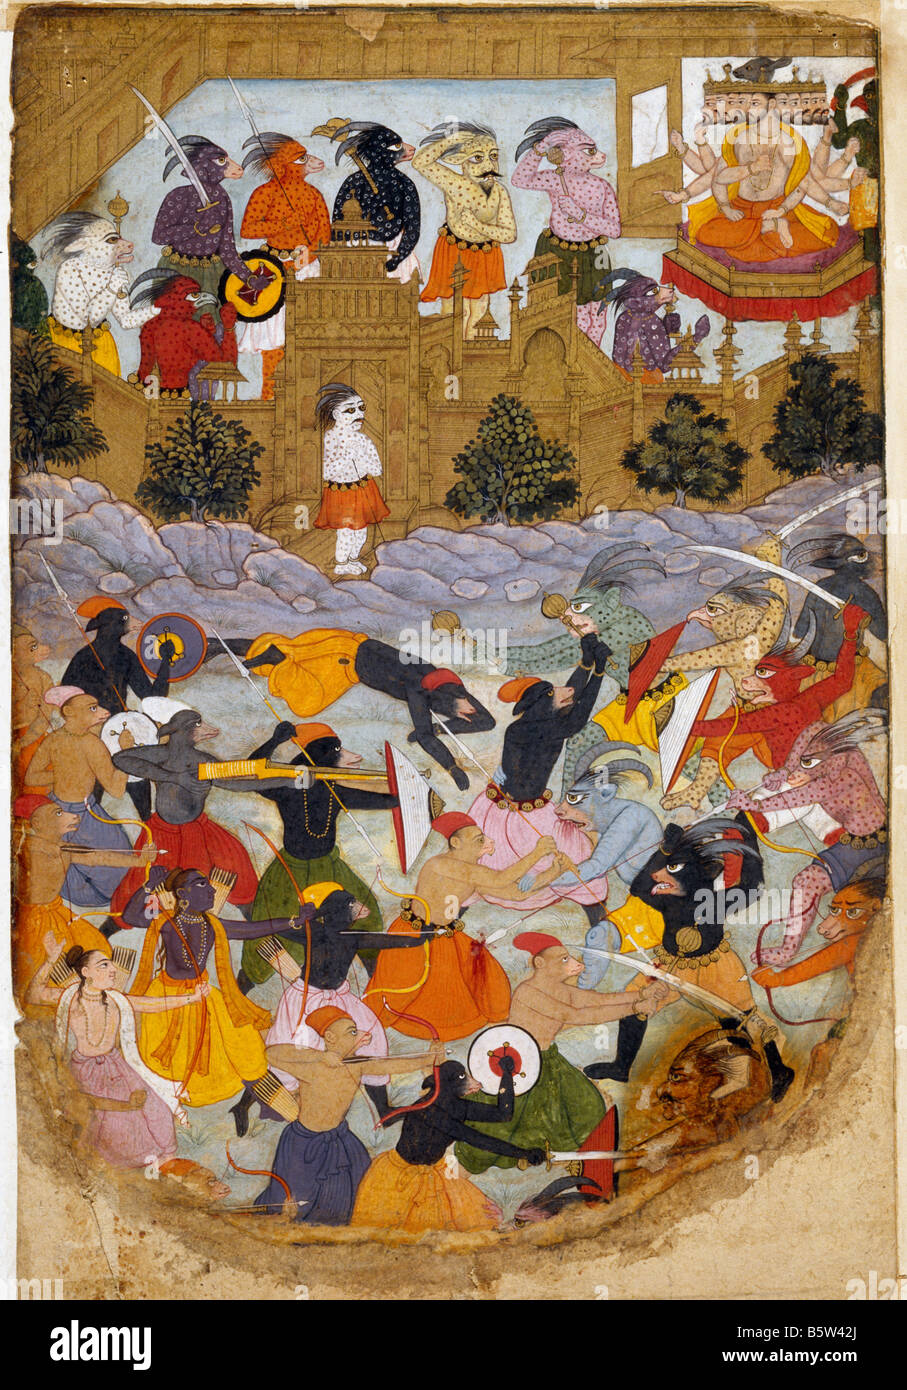 Siège de lanka illustration de livre islamique Ramayana. Transcrit avec texte au verso. Le Mughal. C. 1600 Musée National de Nouvelle Banque D'Images